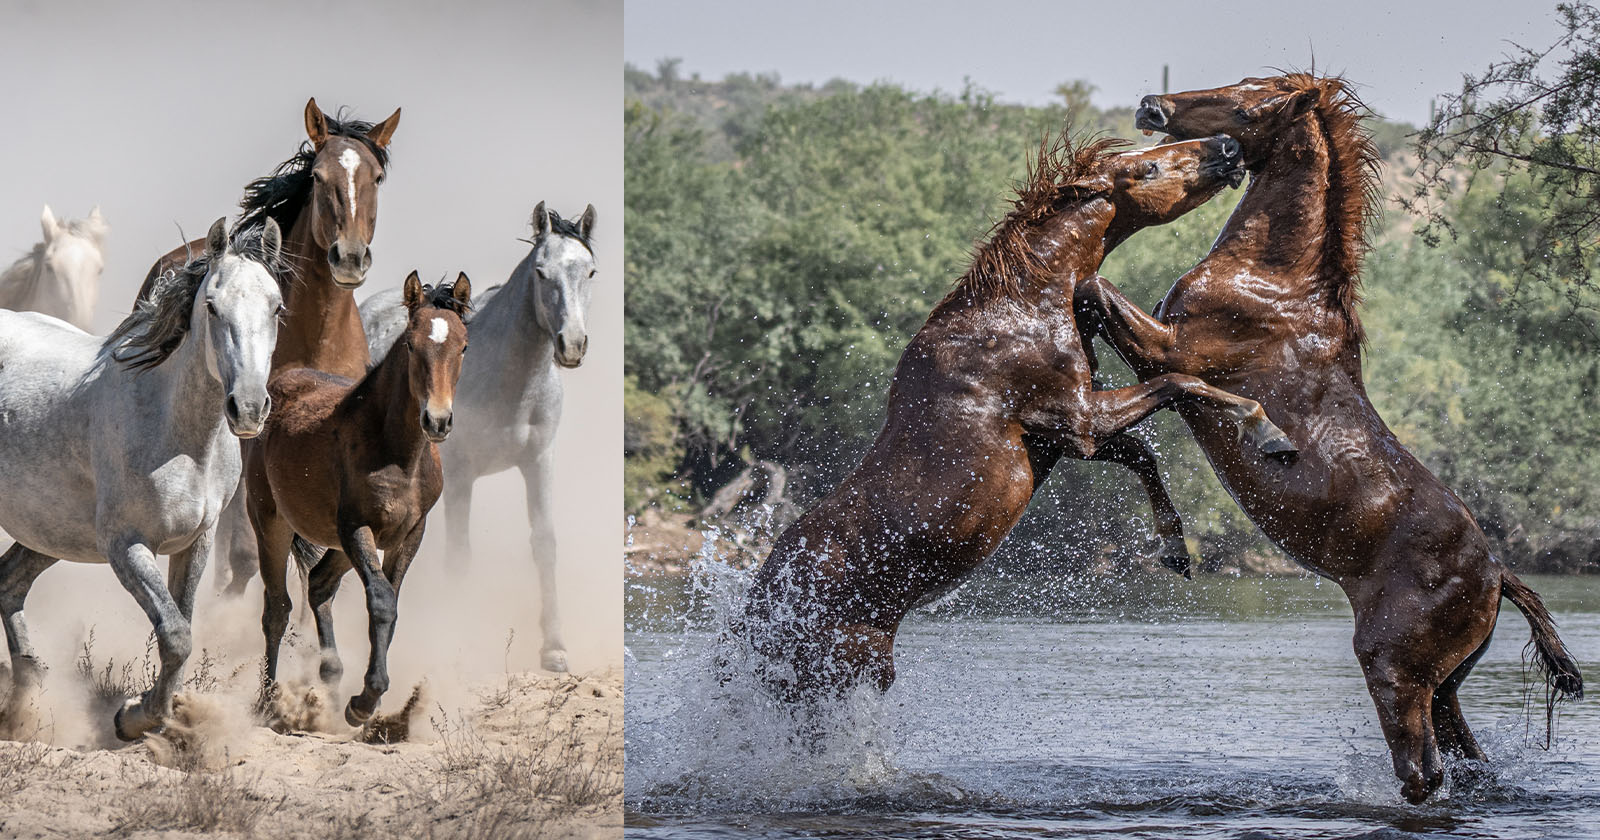 Wild Horse Photographer Braves Snake Bites for Breathtaking Images